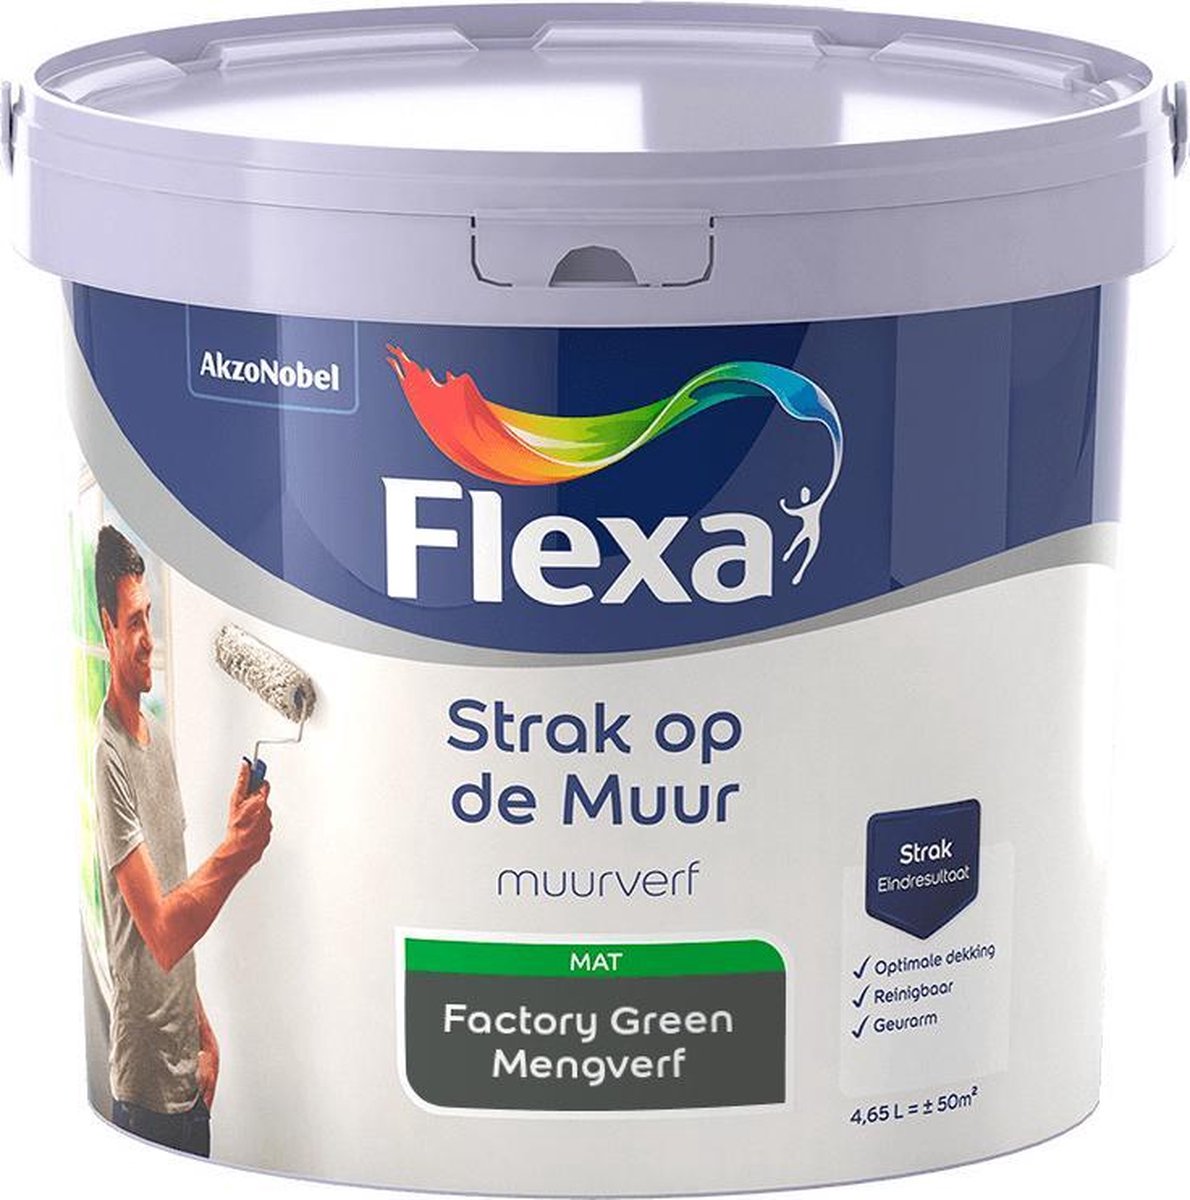 Flexa Strak Op De Muur Muurverf Mengcollectie Factory Green 5 Liter Bol Com